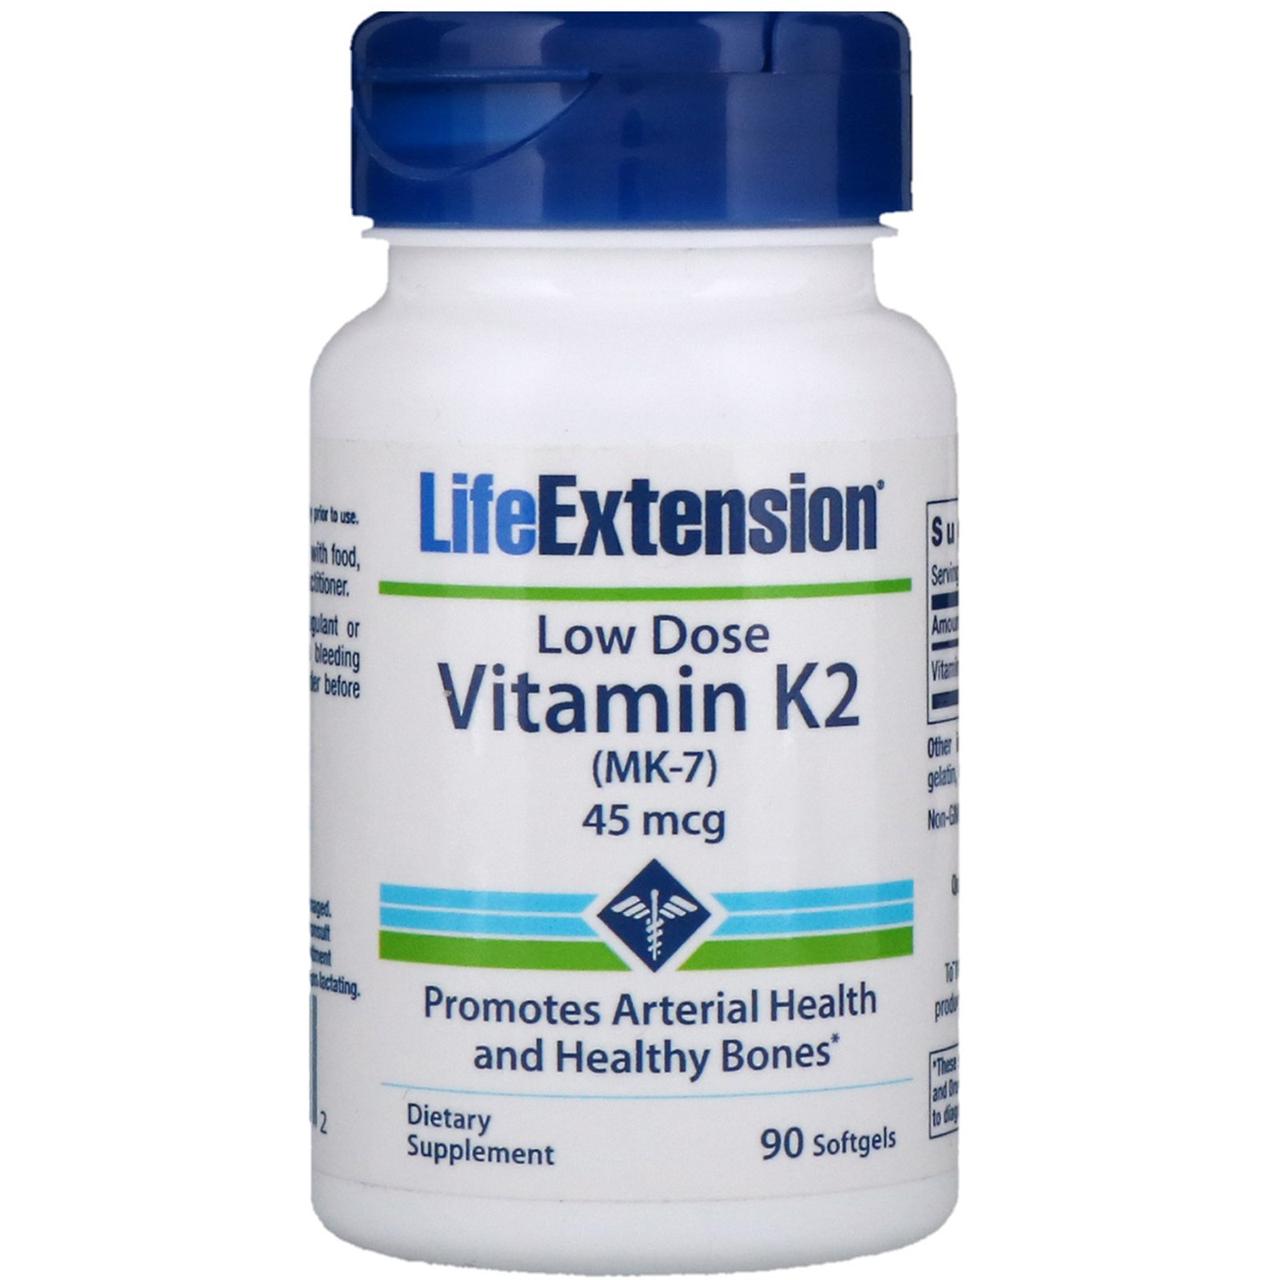 Вітамін К2 (МК-7) у низькій дозі, Life Extension, 45 мкг, 90 м'яких желатинових капсул